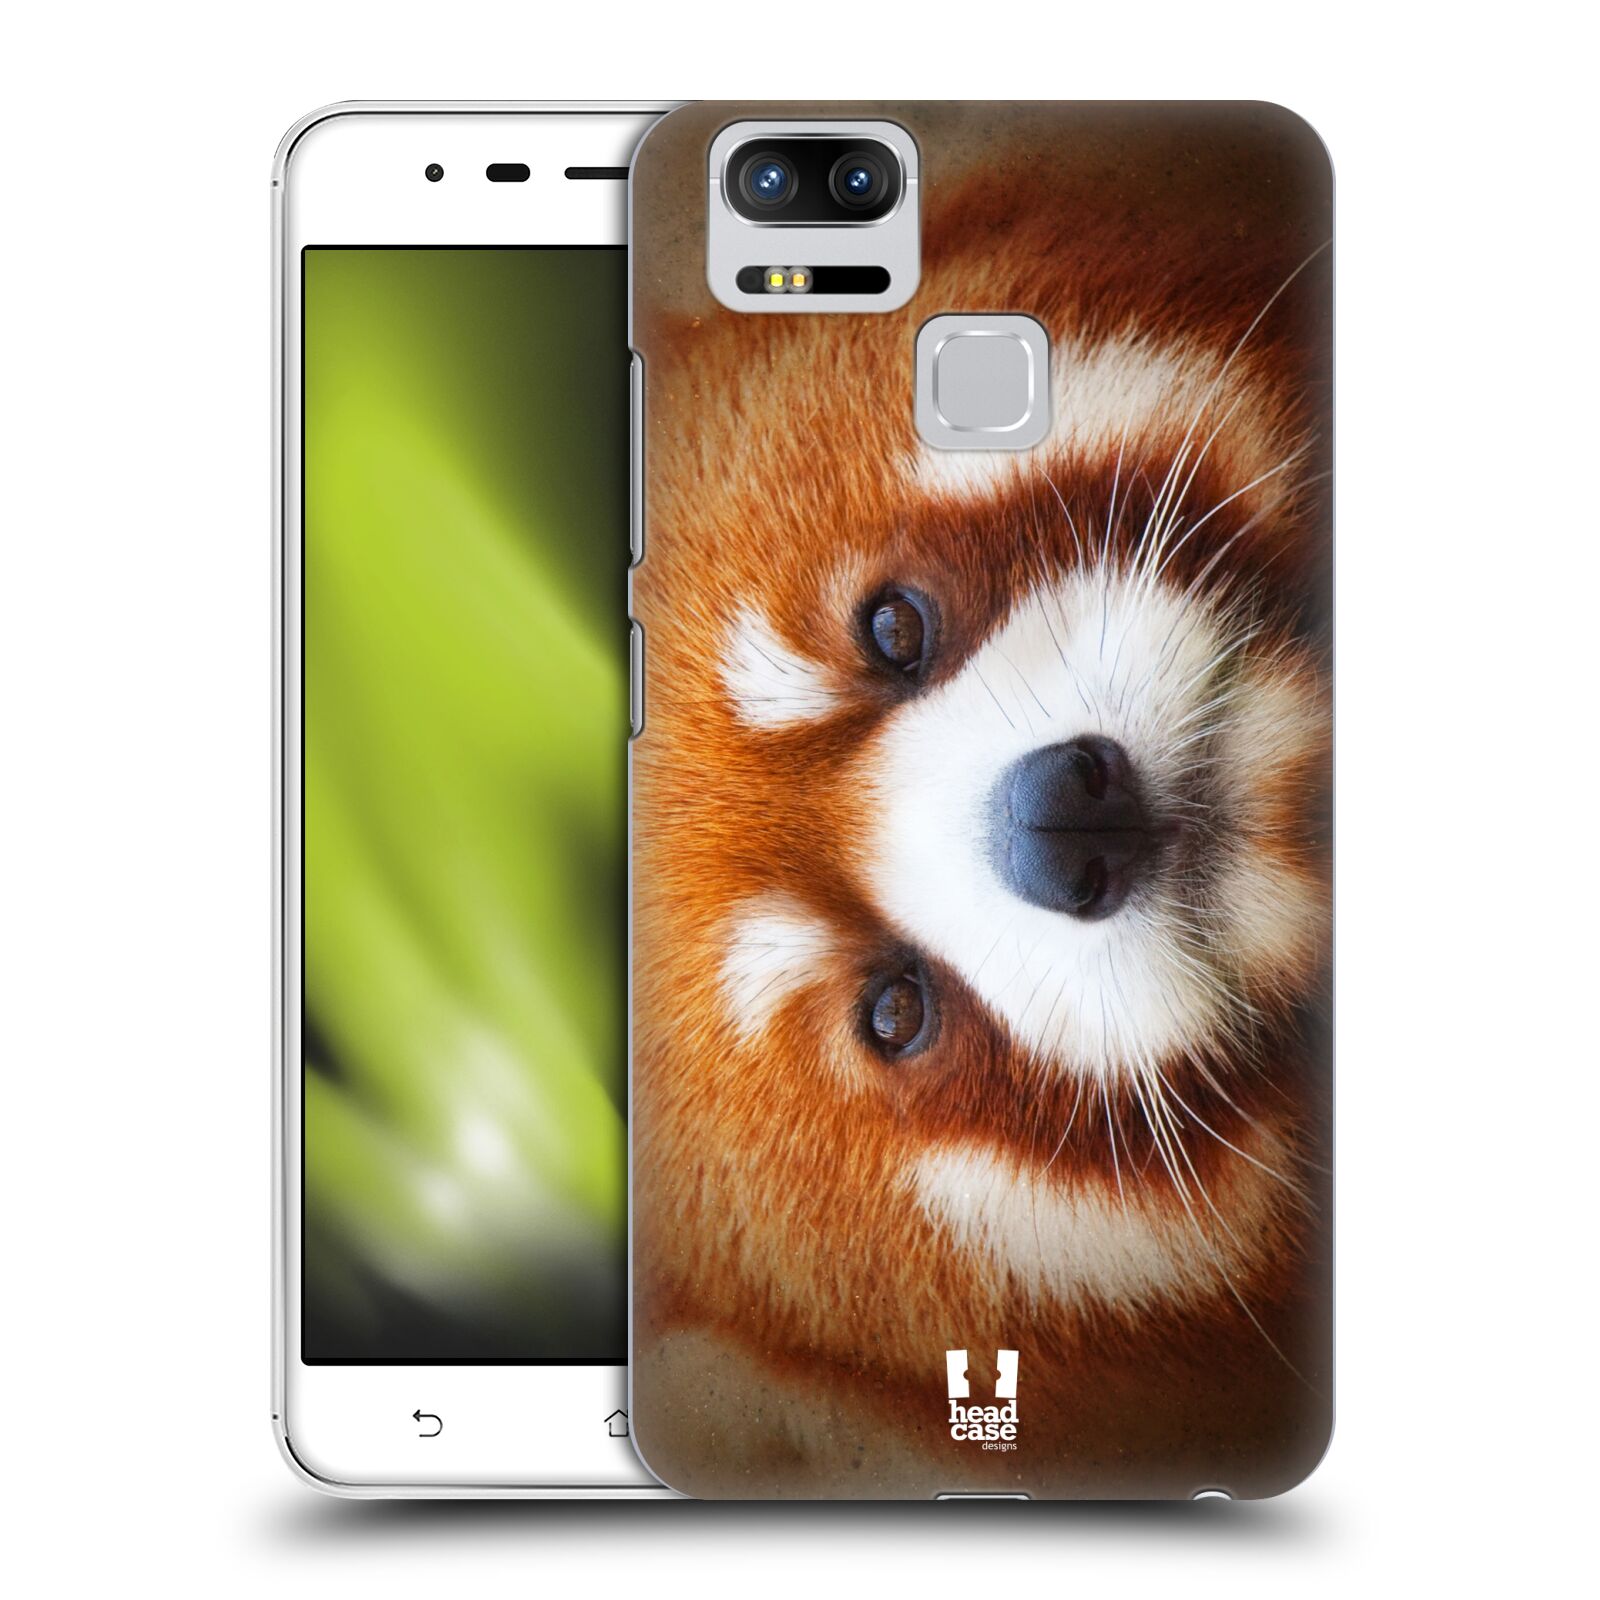 HEAD CASE plastový obal na mobil Asus Zenfone 3 Zoom ZE553KL vzor Zvířecí tváře 2 medvěd panda rudá